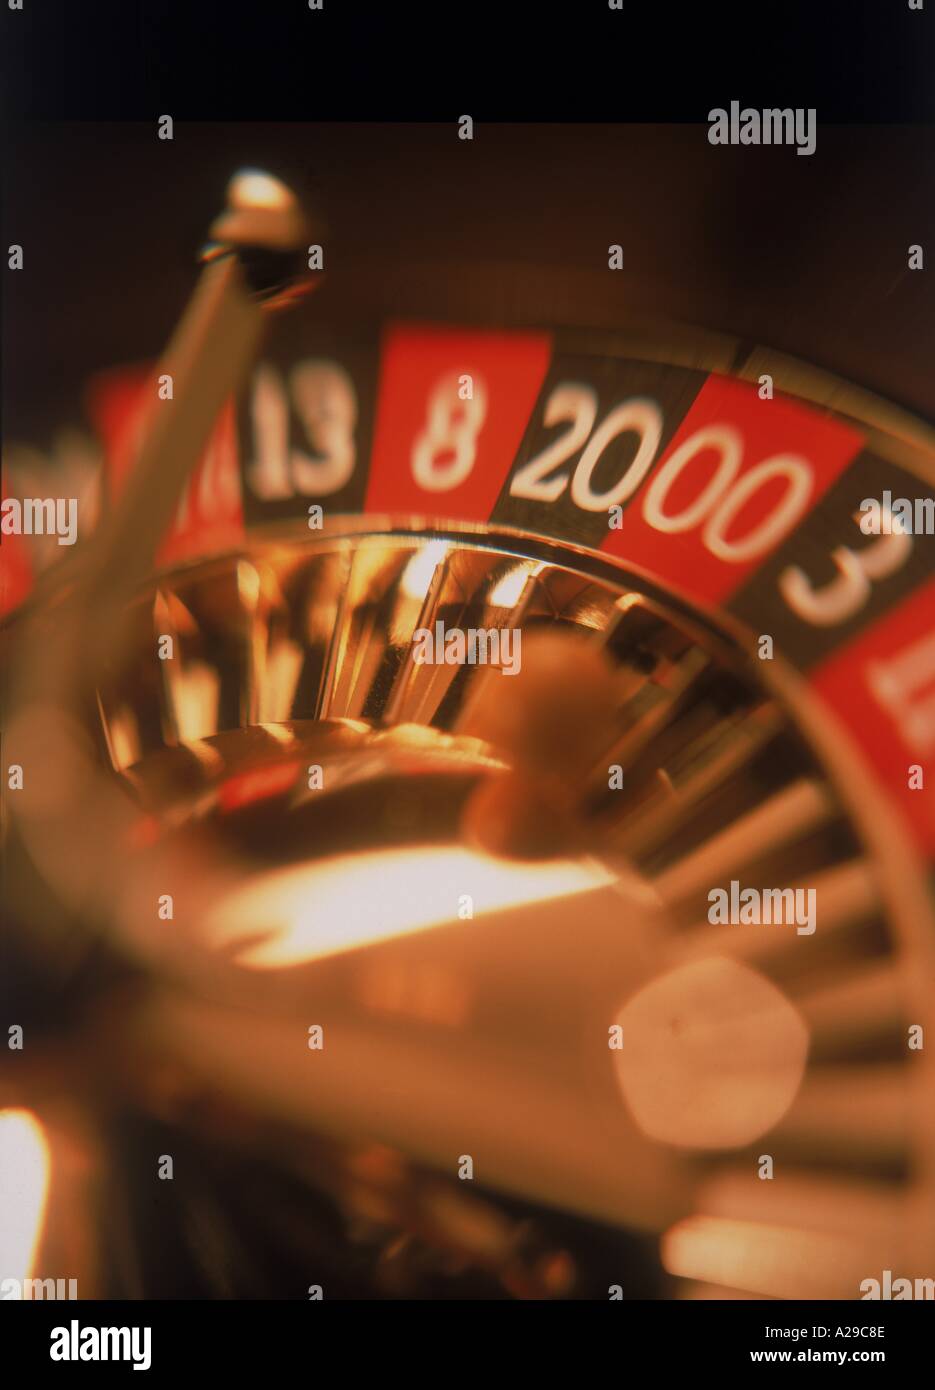 Dettaglio della ruota della roulette Picture Book Foto Stock